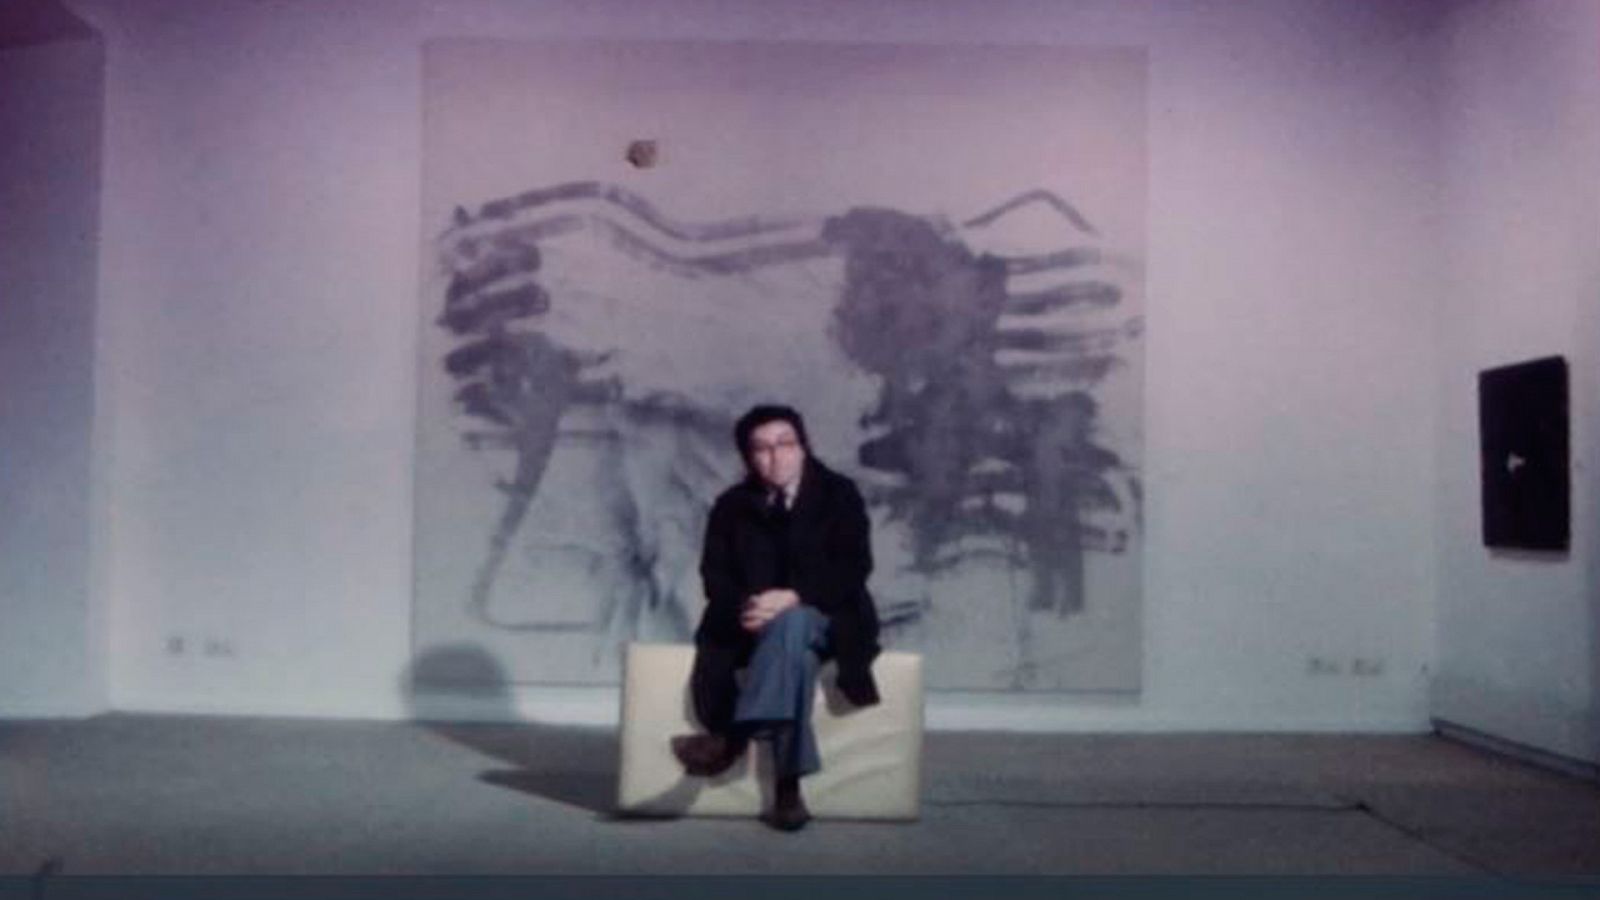 Arxiu TVE Catalunya - Signes - Antoni Tàpies exposa a la Galeria Maeght